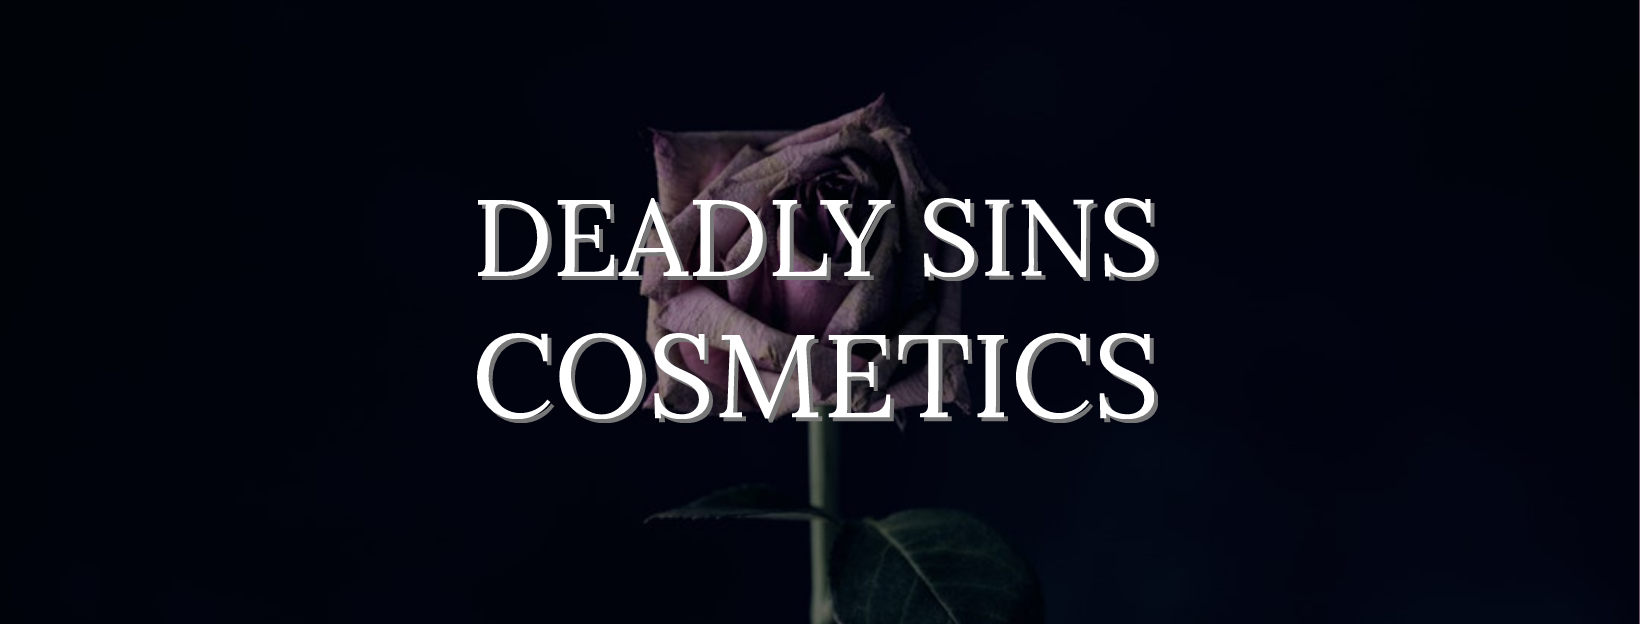 Deadly Sins Cosmetics Logo